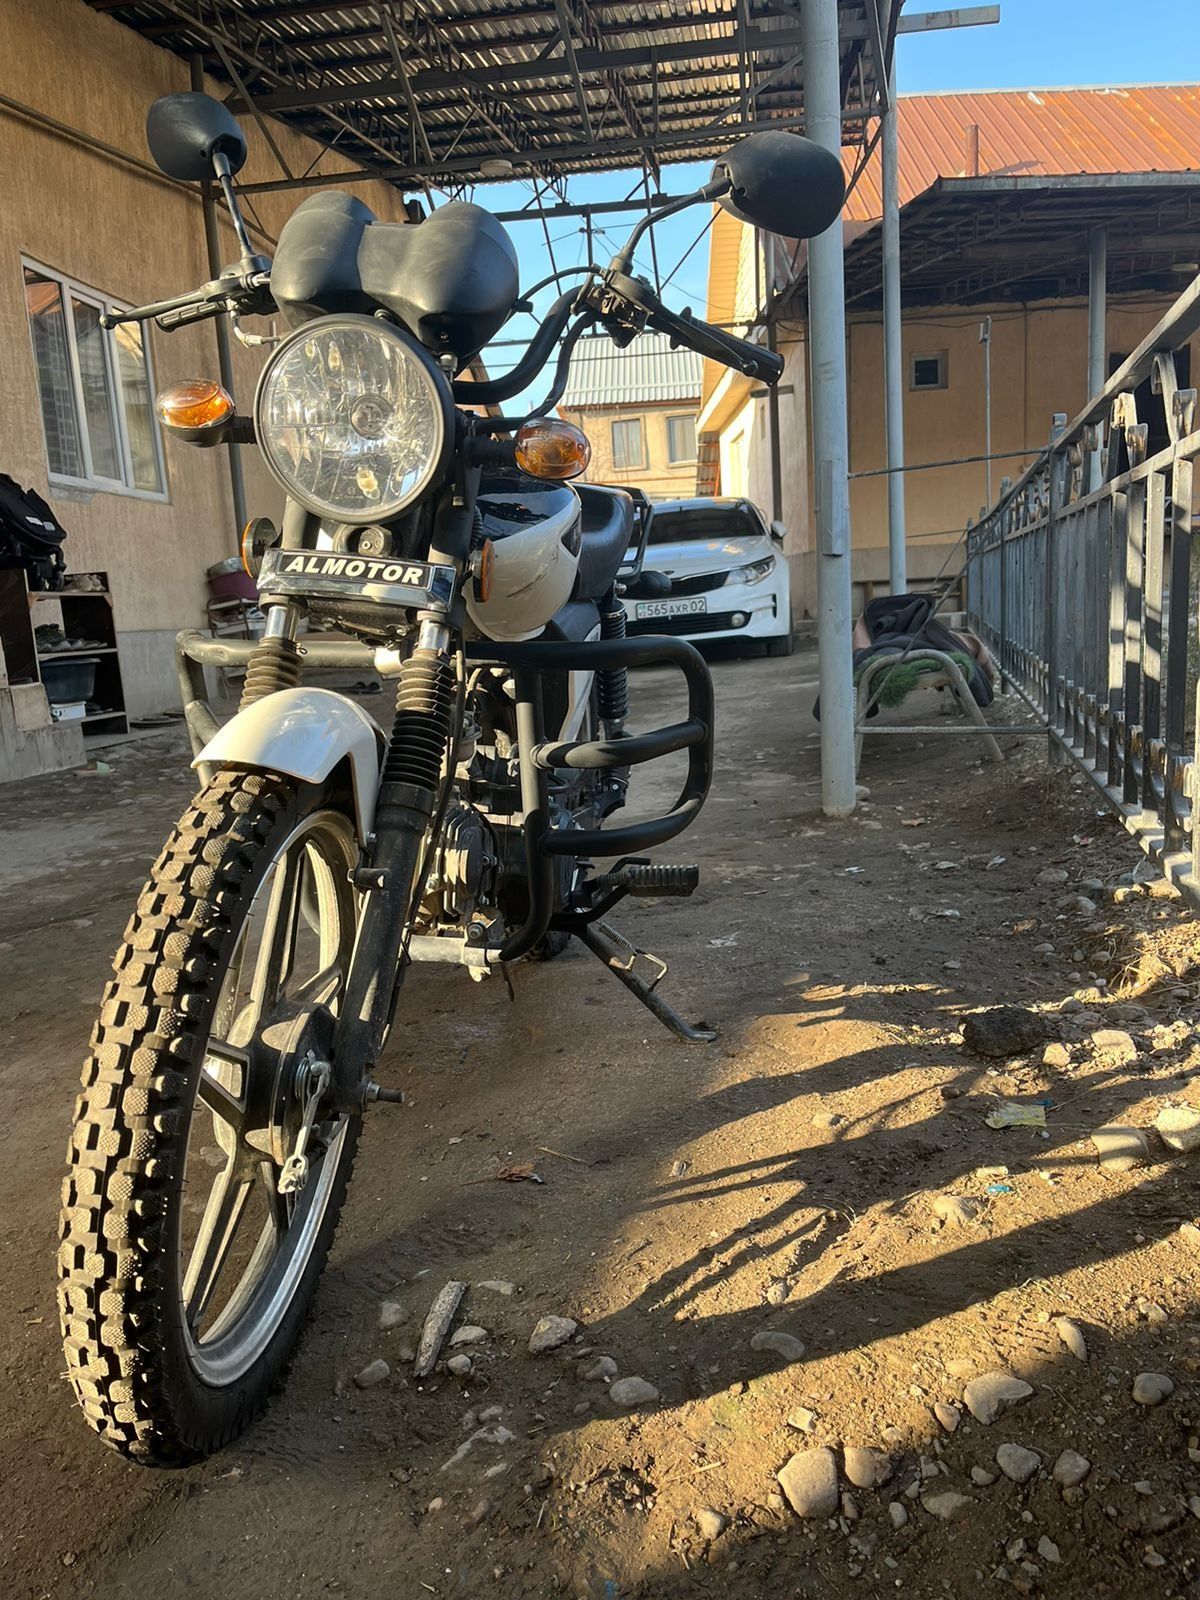 Almator 2022 motorcycles